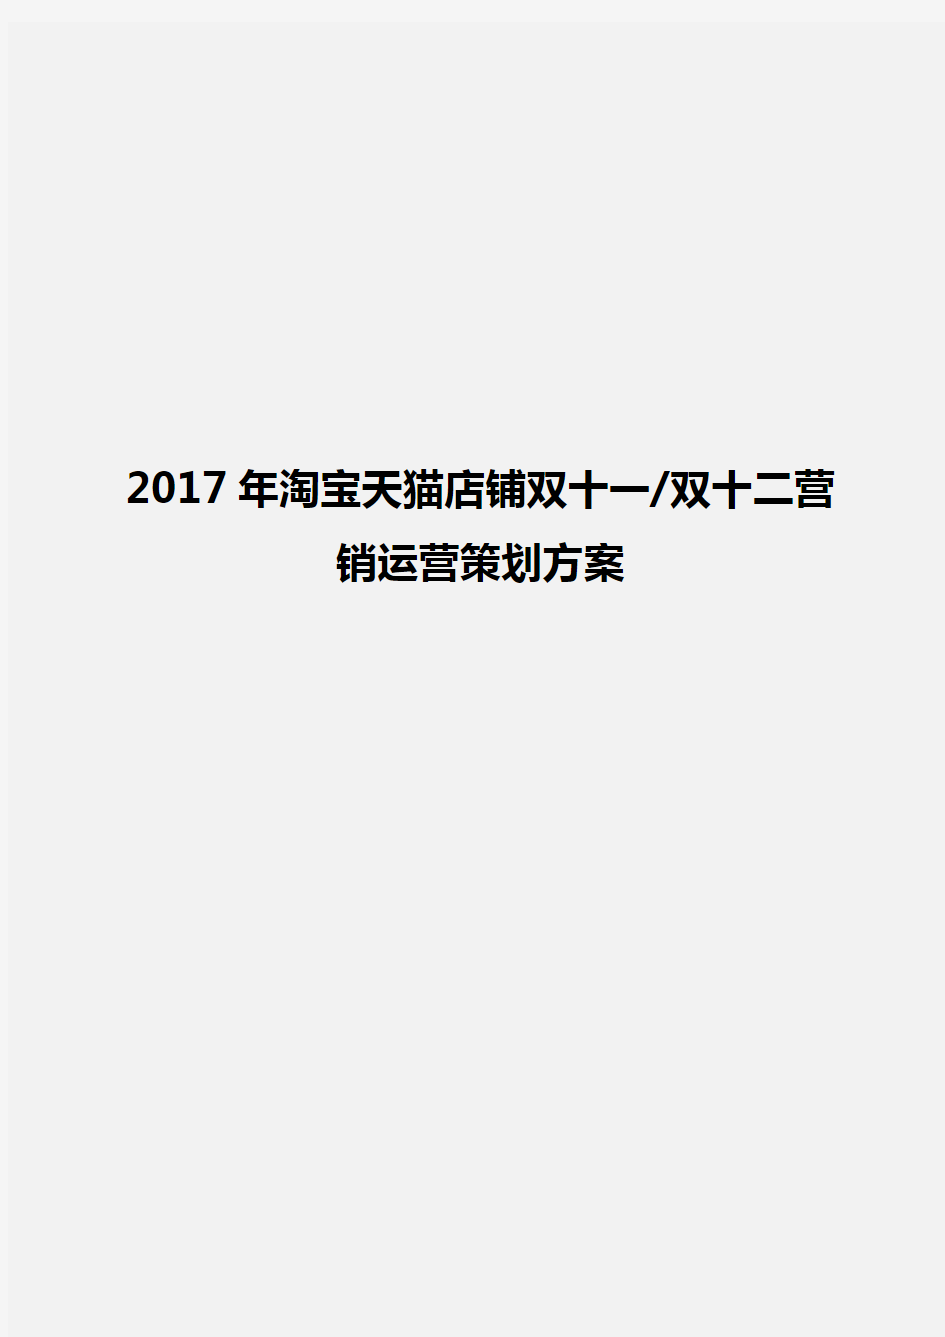 2017年淘宝天猫店铺双十一双十二营销运营策划方案